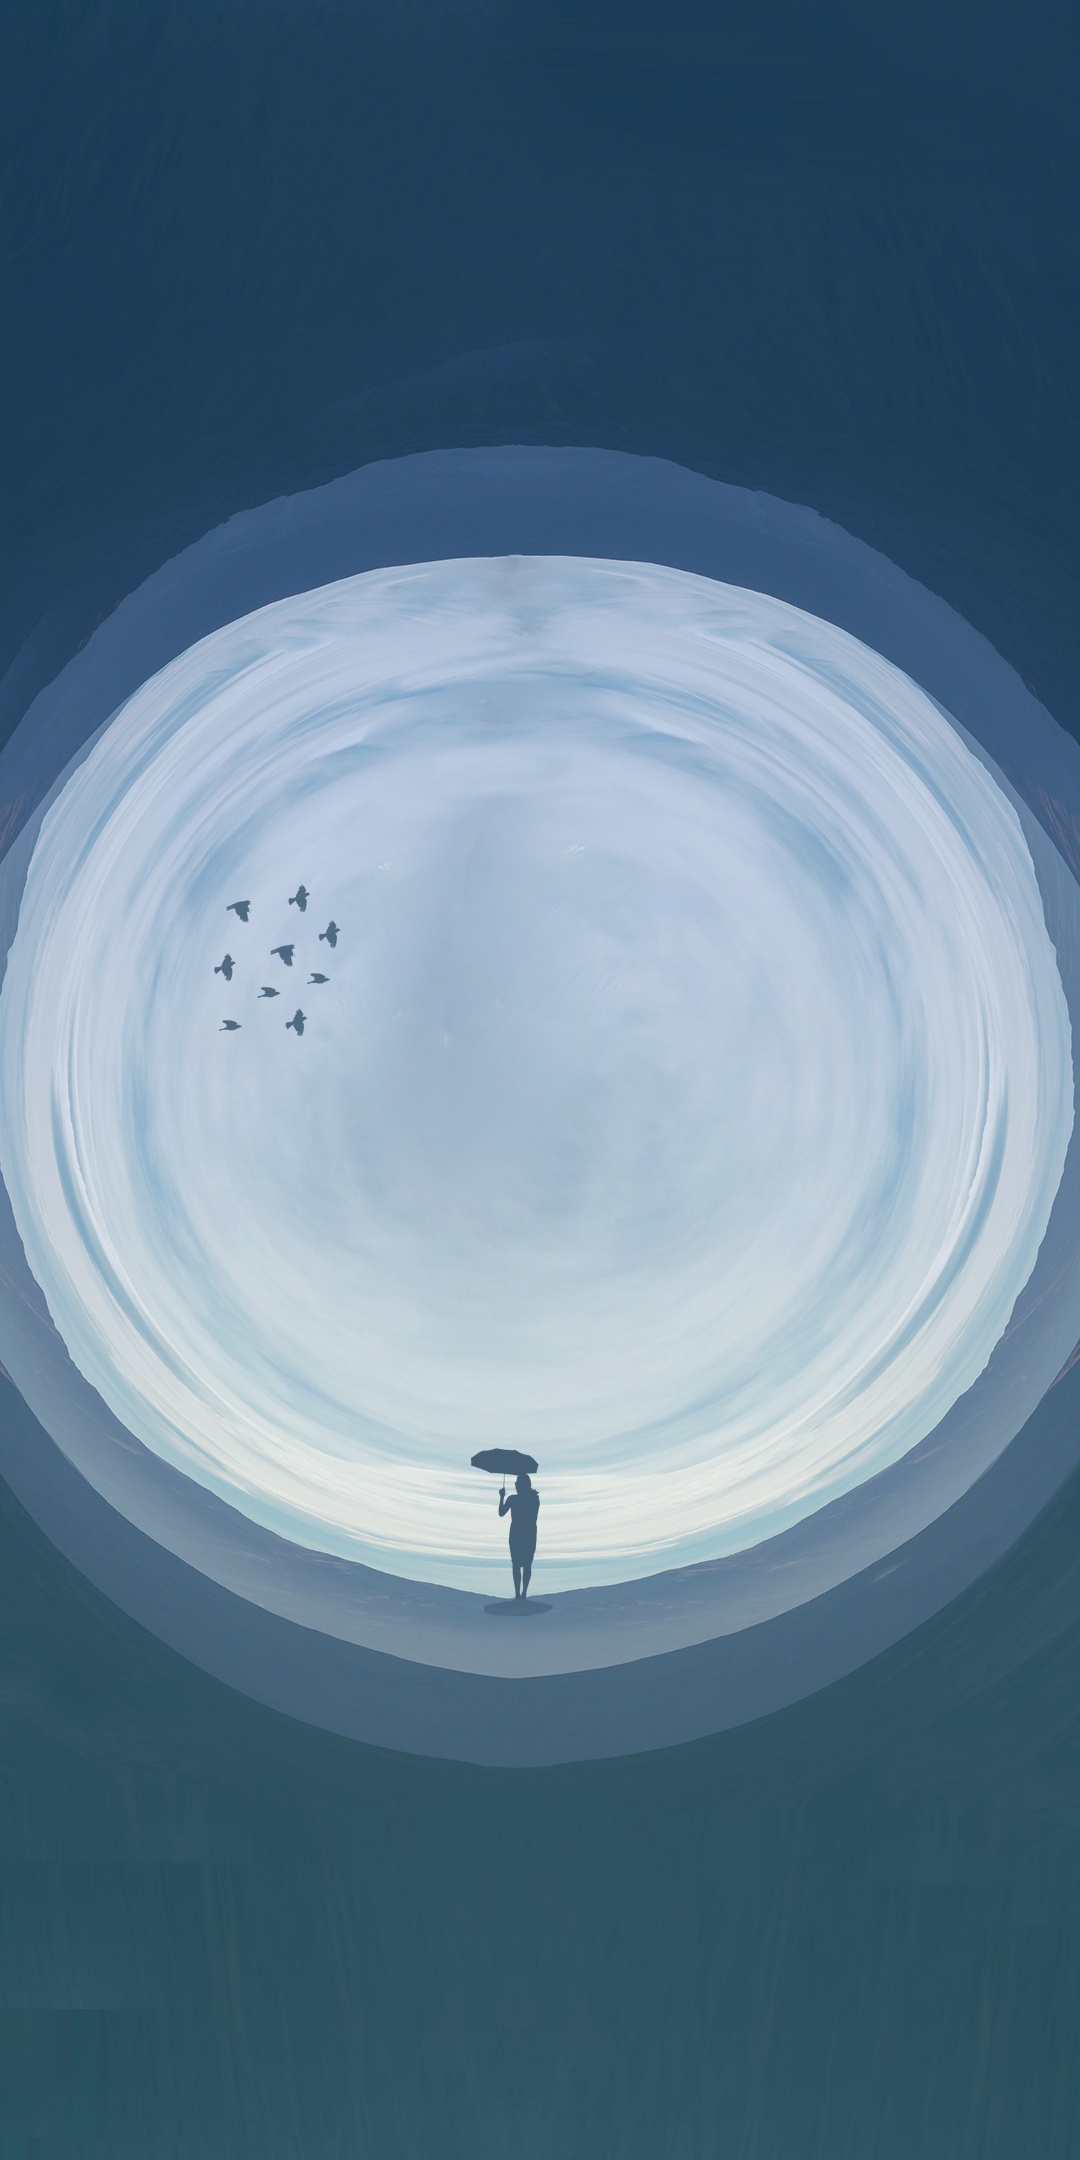 Digital art, man with umbrella, circle, 1080x2160 wallpaper